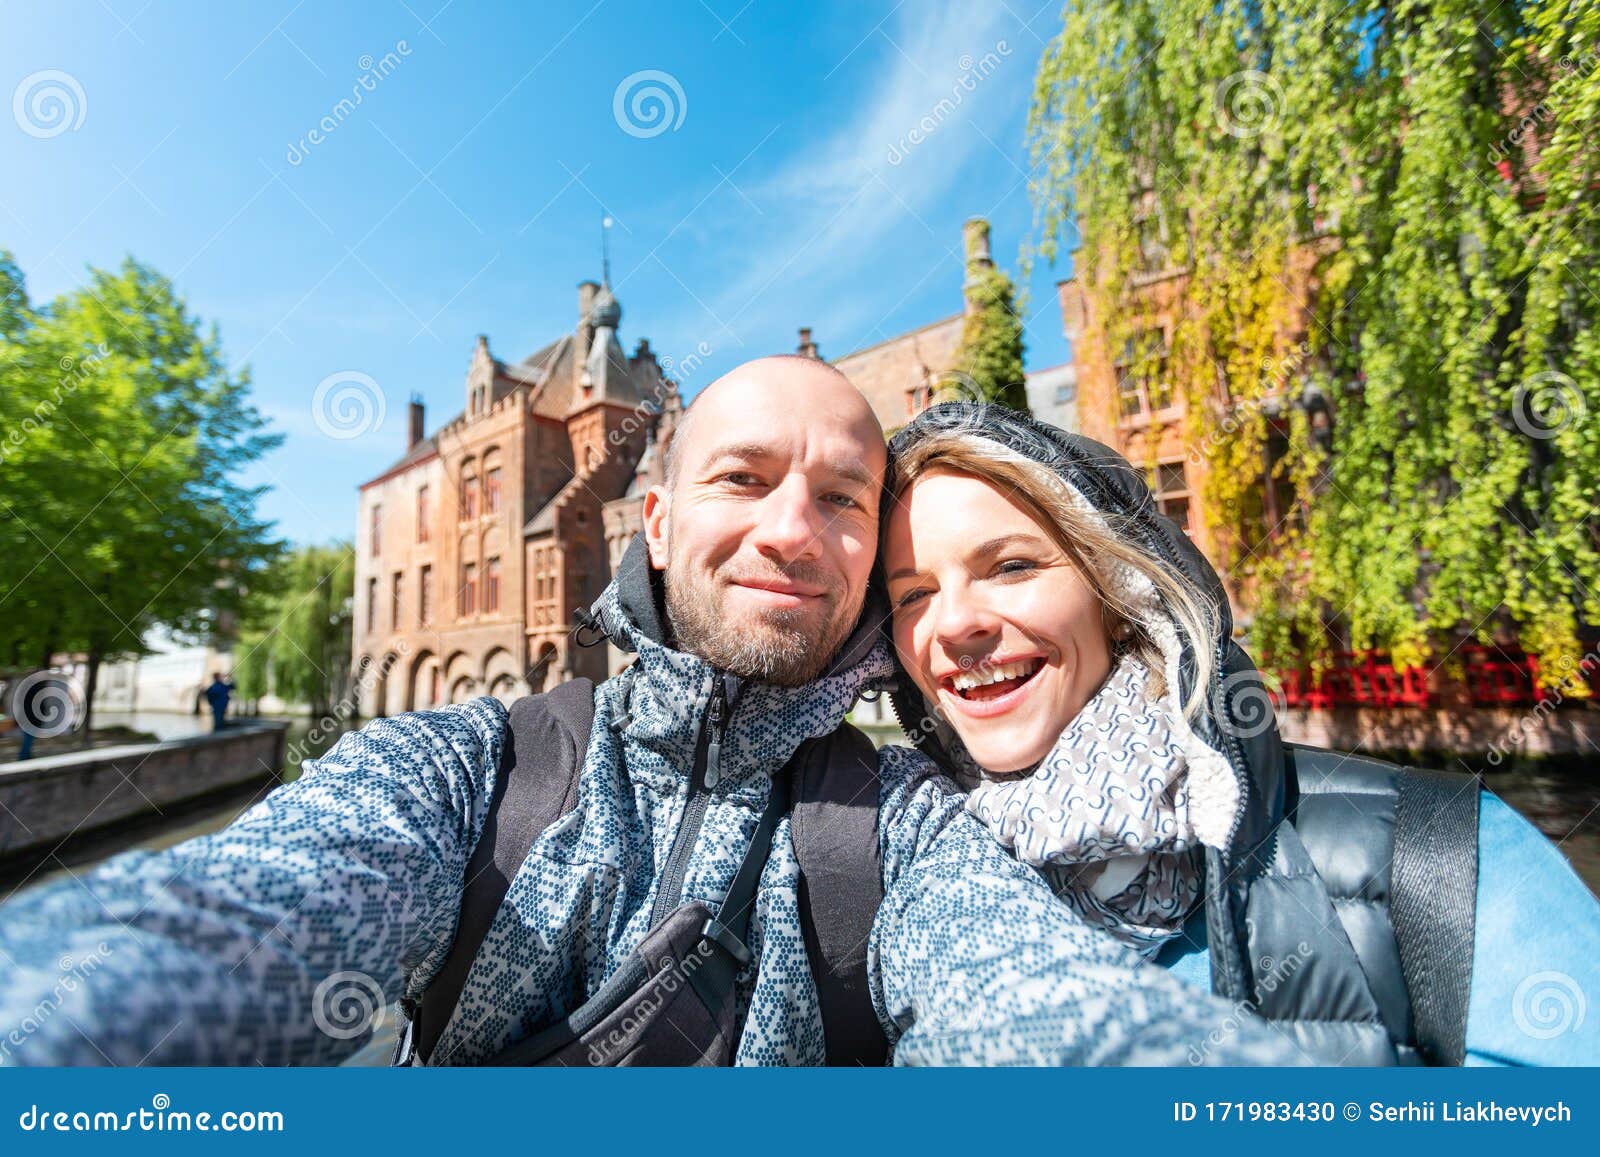 Dating Bruges Belgium